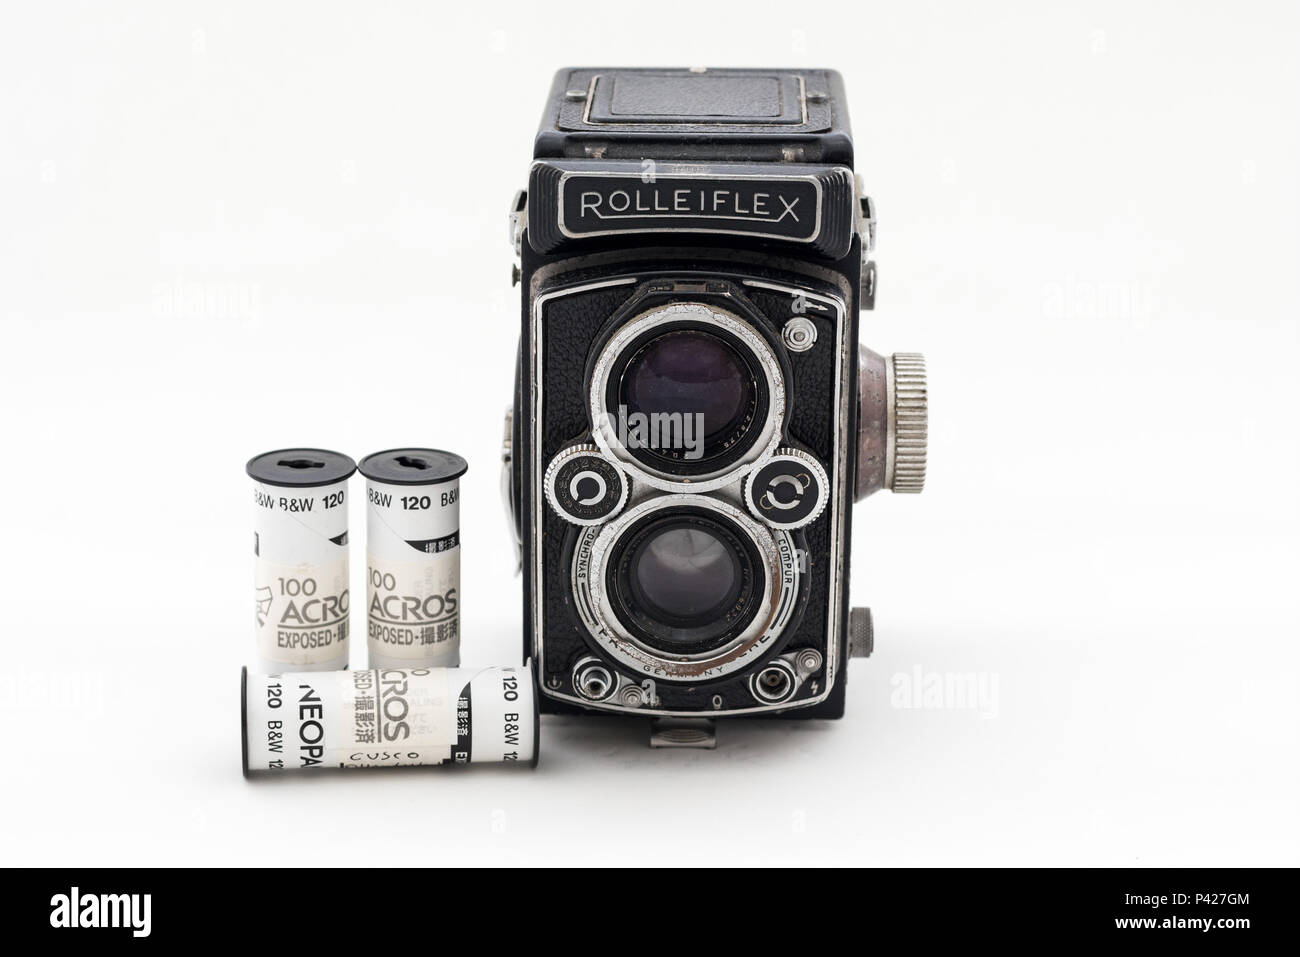 Antiga câmera Rolleiflex 1957 e rolos de filme Fuji. Stock Photo